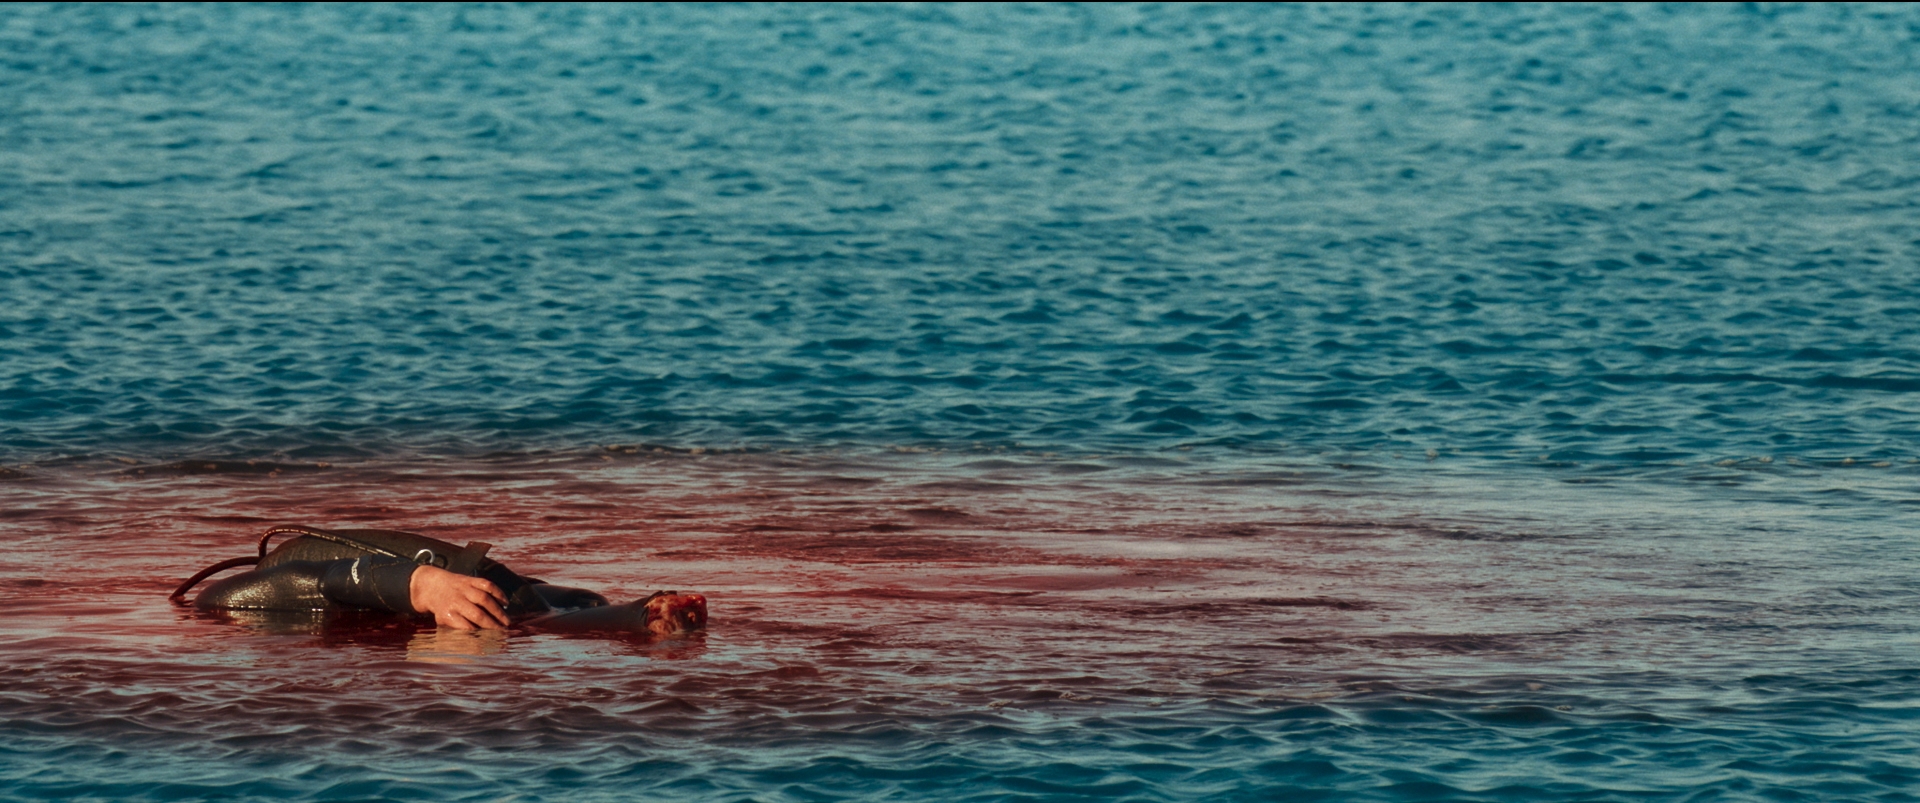 Hàm Tử Thần - Tựa phim rùng rợn xoay quanh đàn cá mập khát máu đáng xem bậc nhất hè này - Ảnh 4.